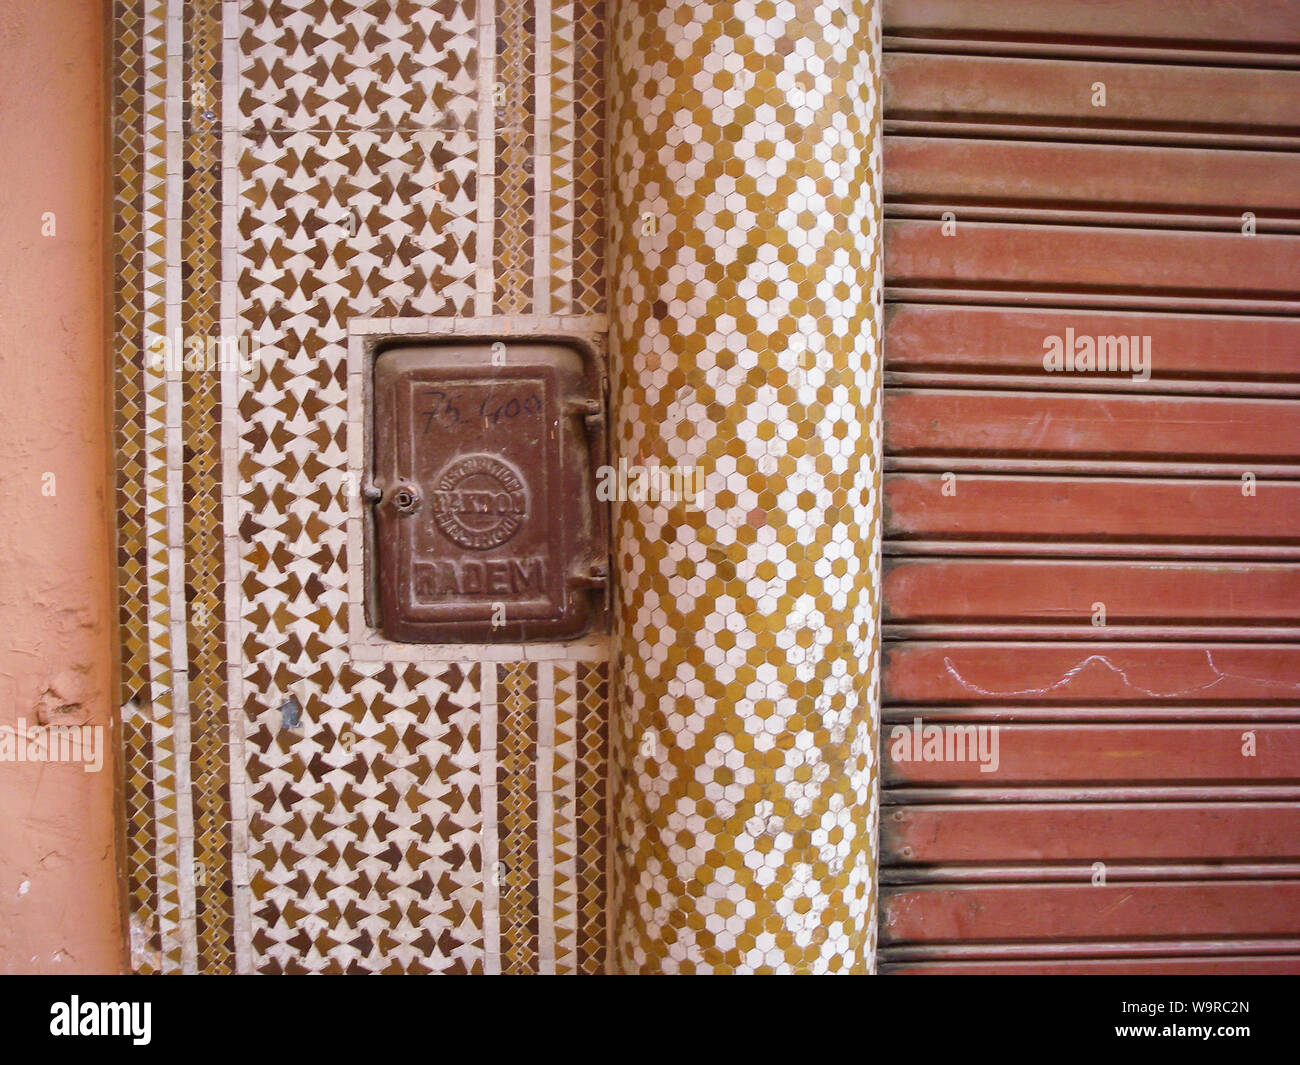 Marrakech Maroc Aprile 02,2010: misuratore di energia elettrica su una parete con variopinte piastrelle Arabo Foto Stock